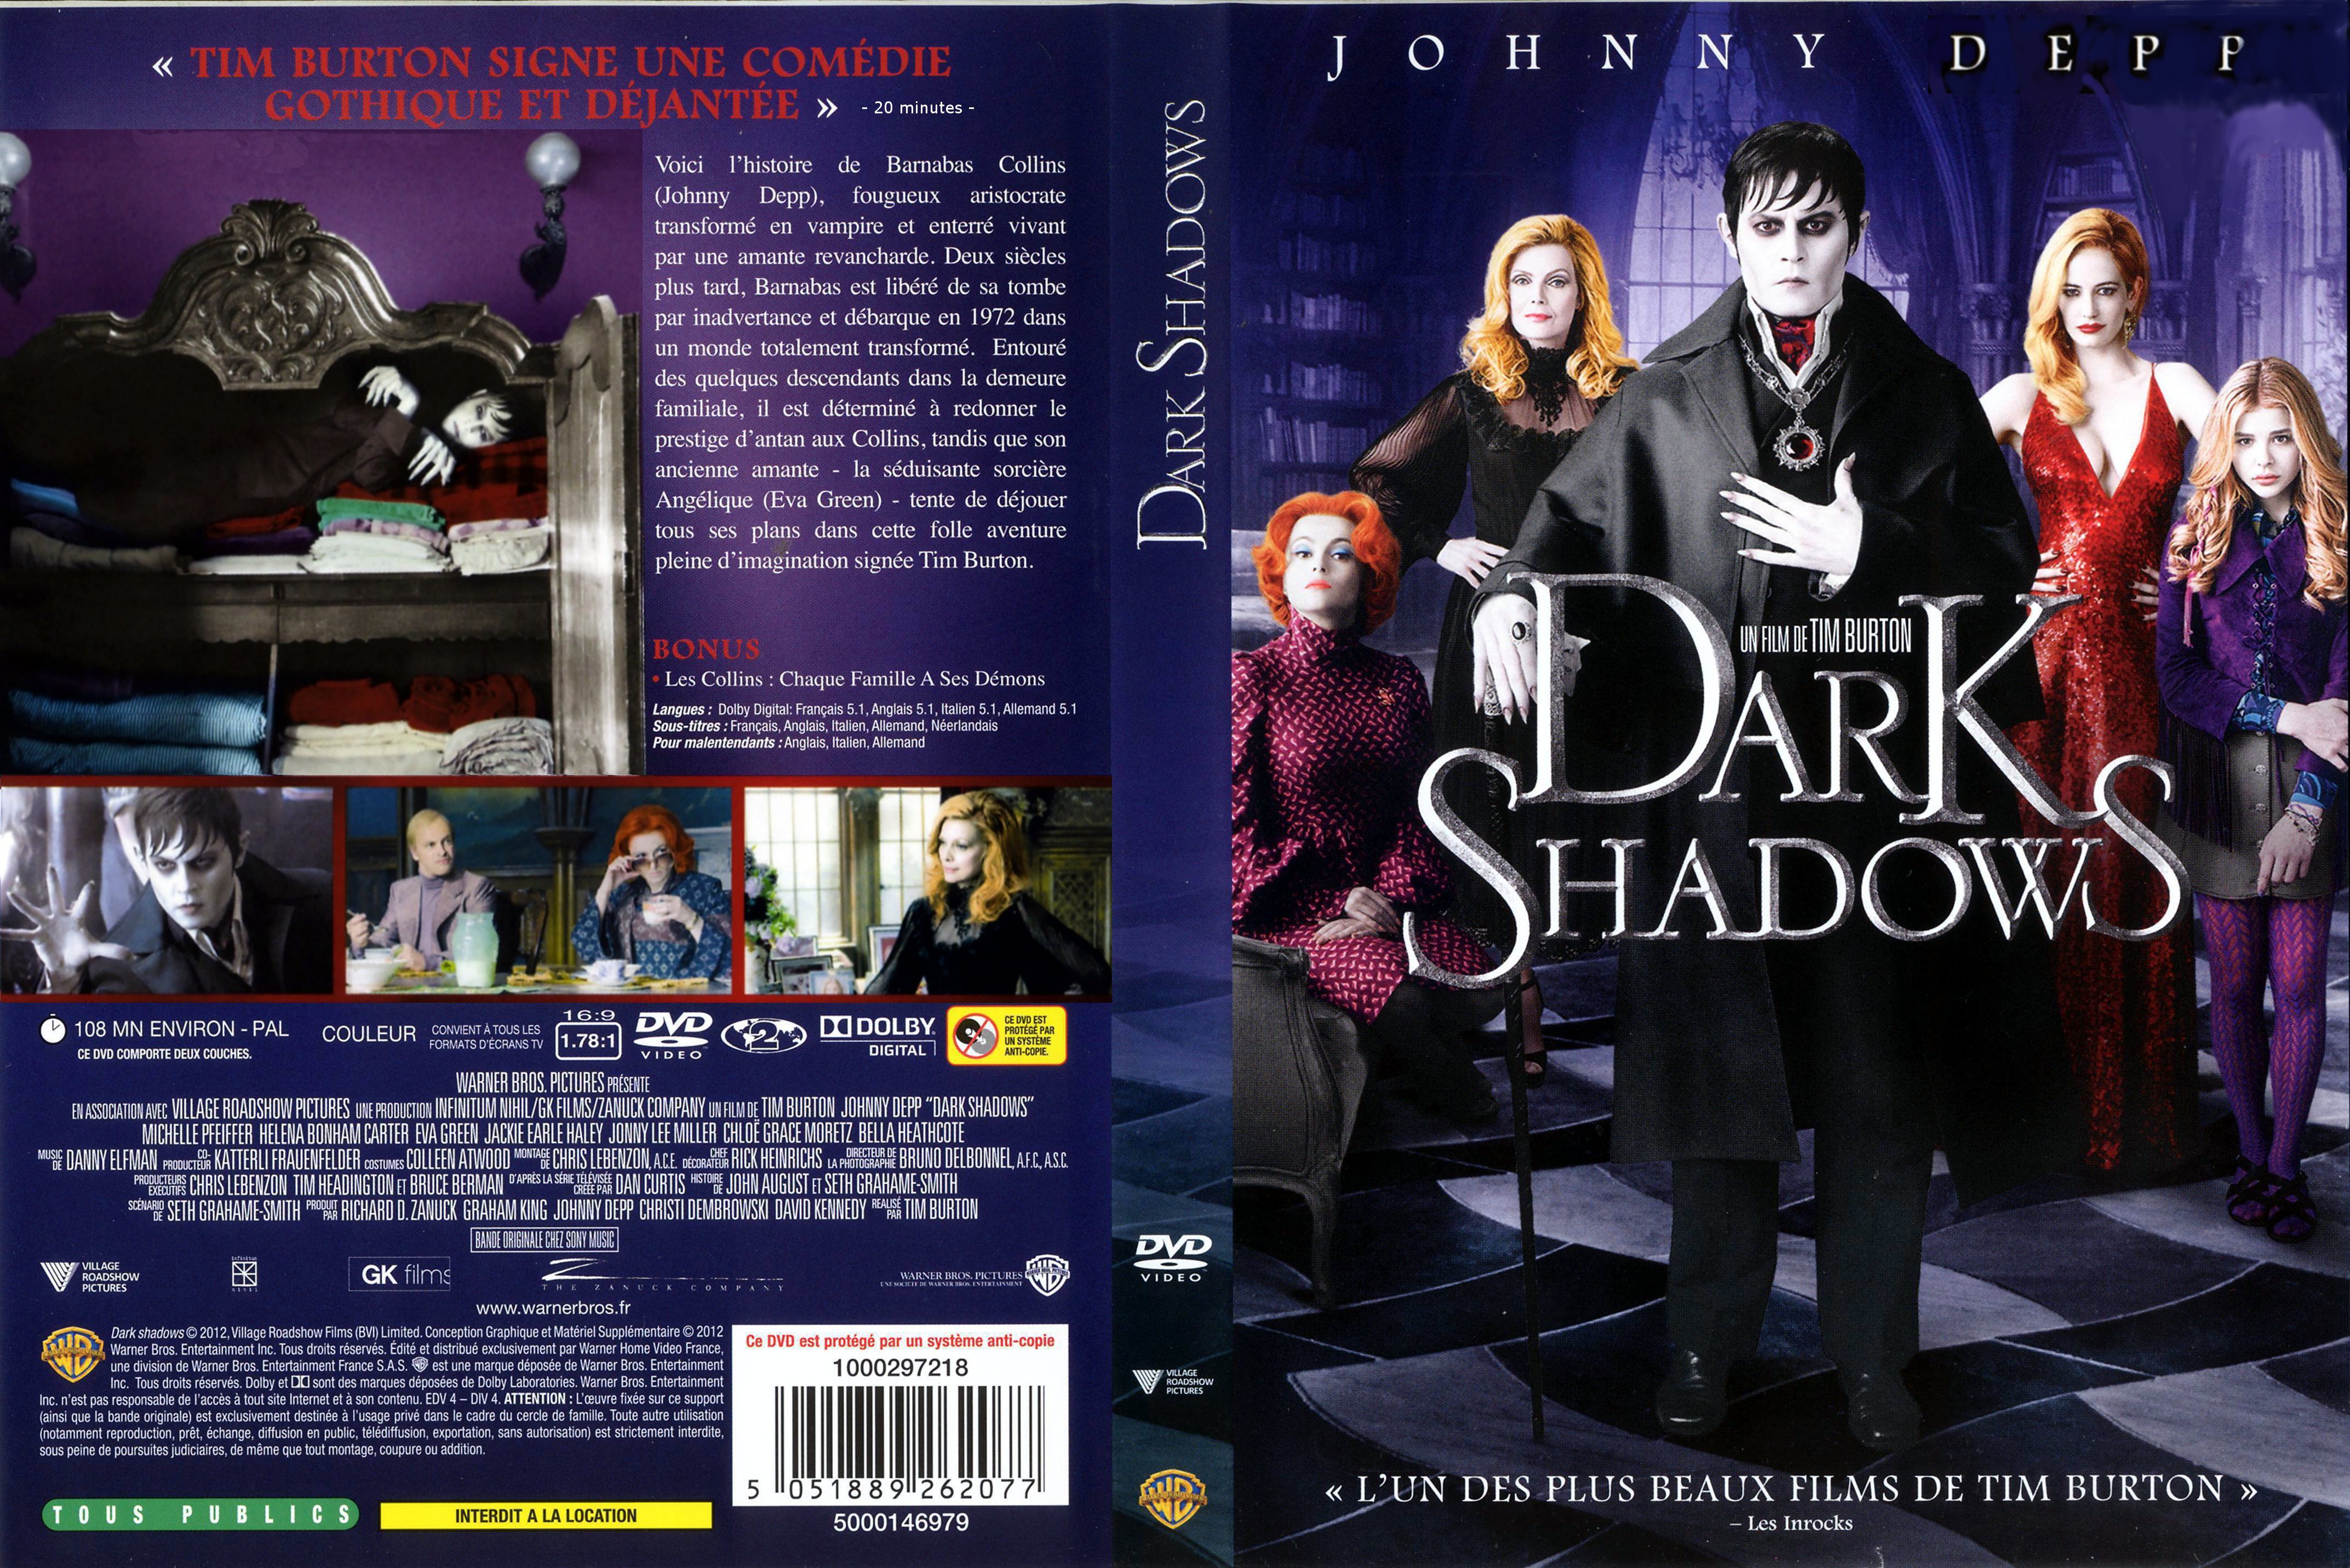 Jaquette DVD Dark shadows custom v3